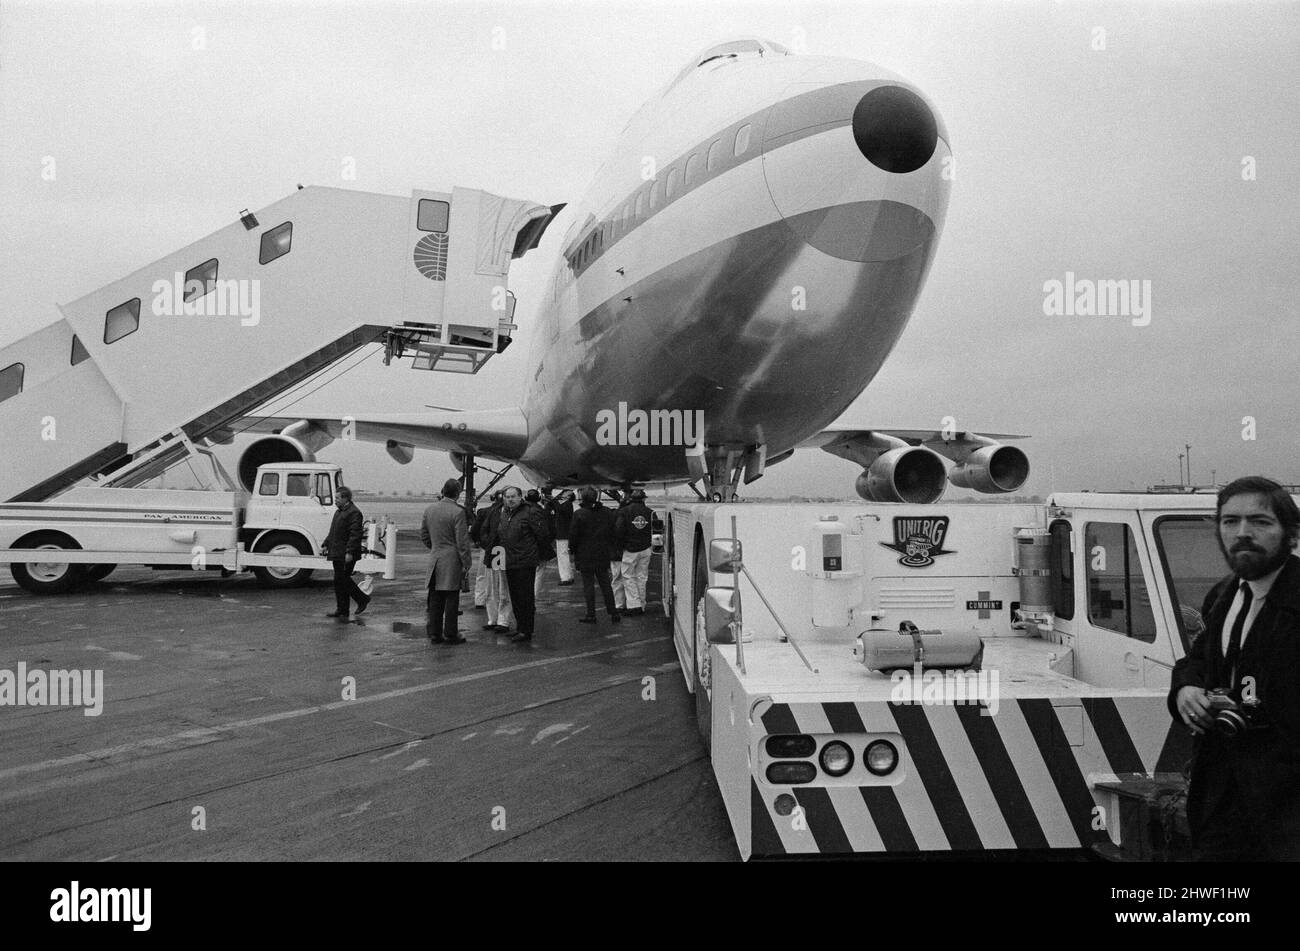 Le Boeing 747 de 361 passagers arrive à l'aéroport de Heathrow. Le premier Boeing 747 Jumbo à voler vers la Grande-Bretagne est arrivé en toute sécurité de New York. Le jet géant a une vitesse de croisière de 625 mph et devrait réduire le trajet de New York à Londres de 30 minutes. 12th janvier 1970. Banque D'Images